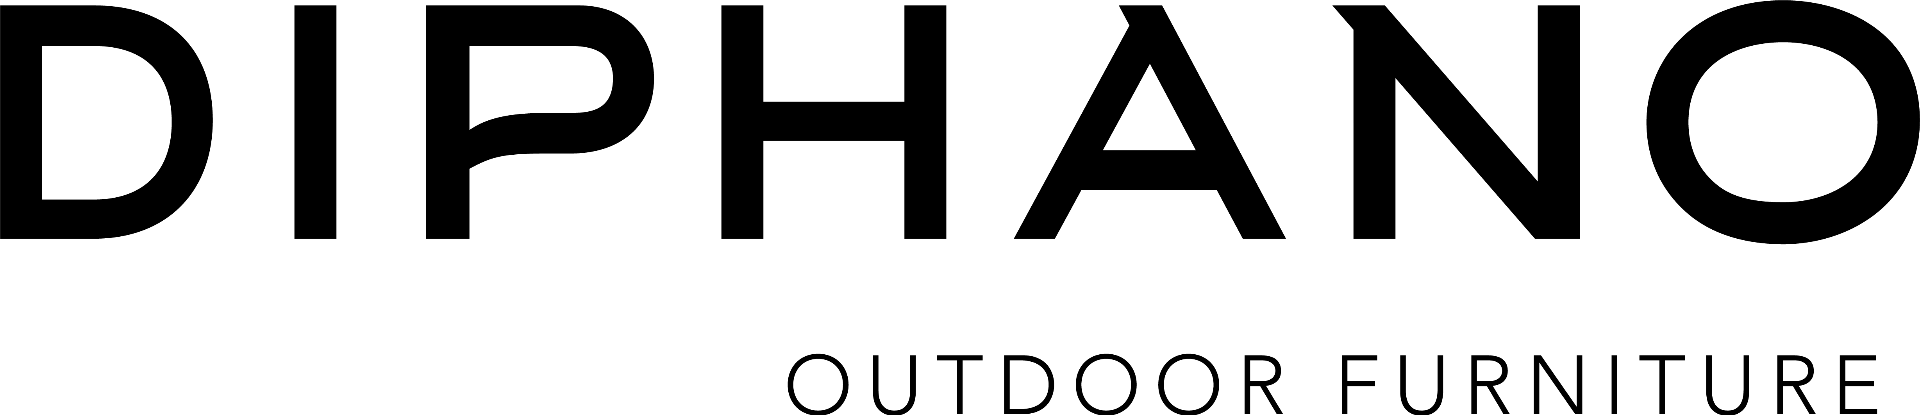 Diphano logo